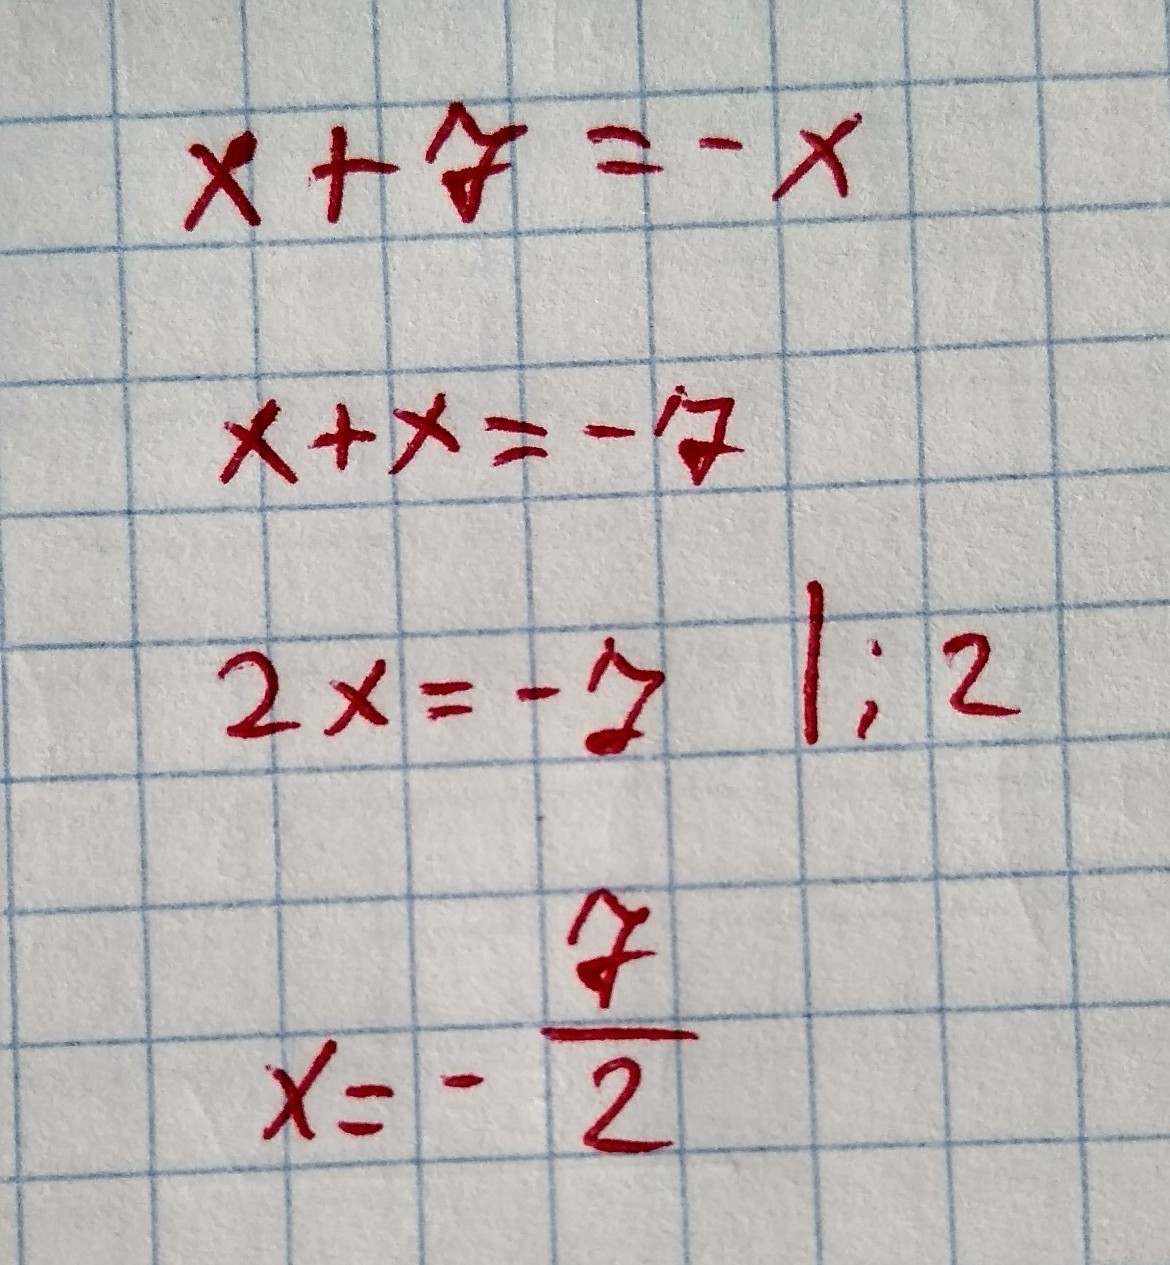 7x 9 найти корень. Найдите корень уравнения х+7=-х. Найдите корень уравнения 7 x + − x .. X-7/X(X+7). 7x7.